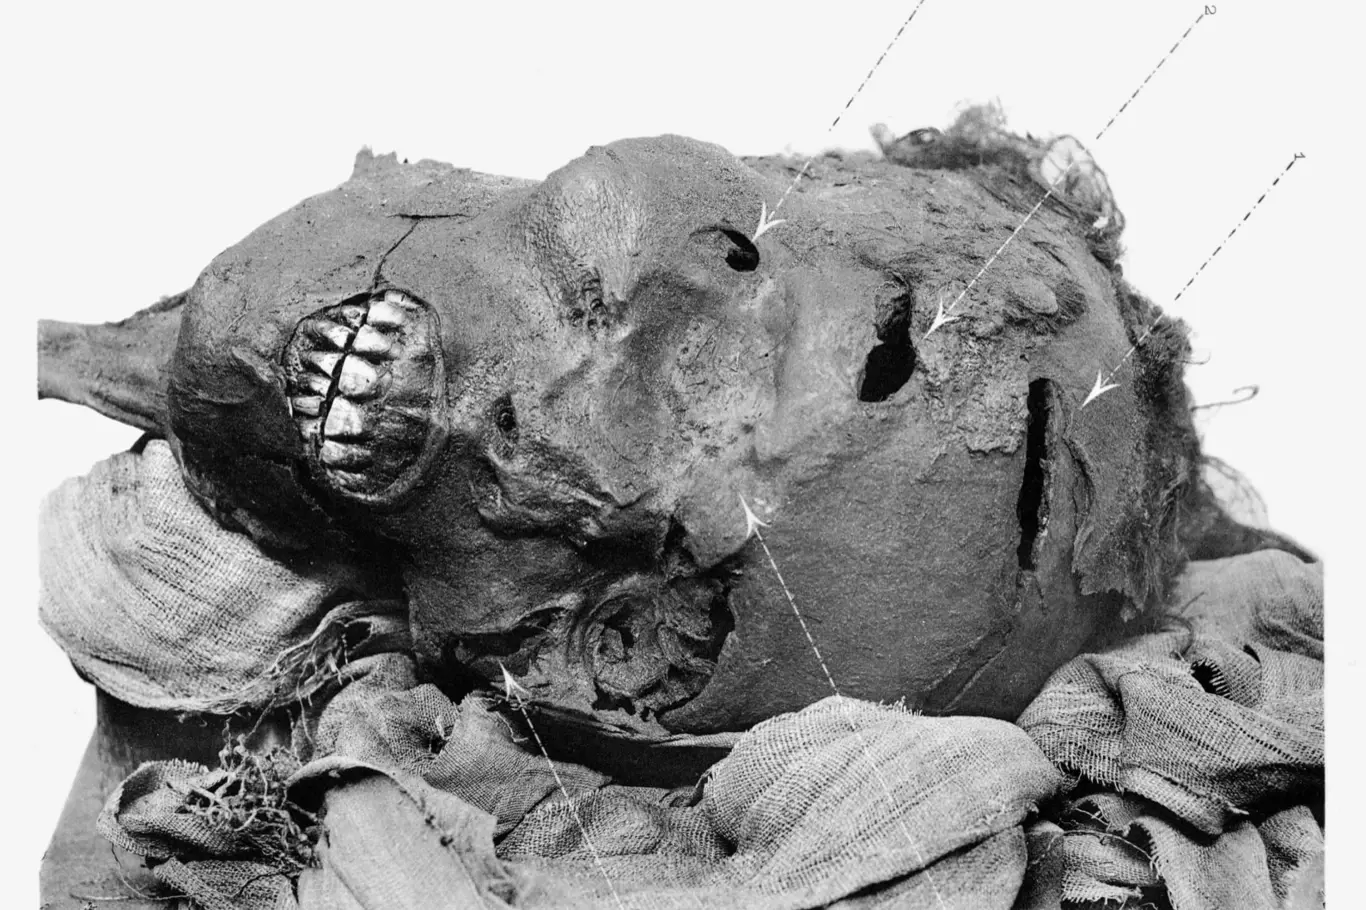 Mumifikovaná hlava Seqenenra s vyobrazením jeho zranění. Řez nad okem byl způsoben jinou zbraní, pravděpodobně nějakou dýkou. Podle rozšířené teorie zemřel v bitvě proti Hyksósům